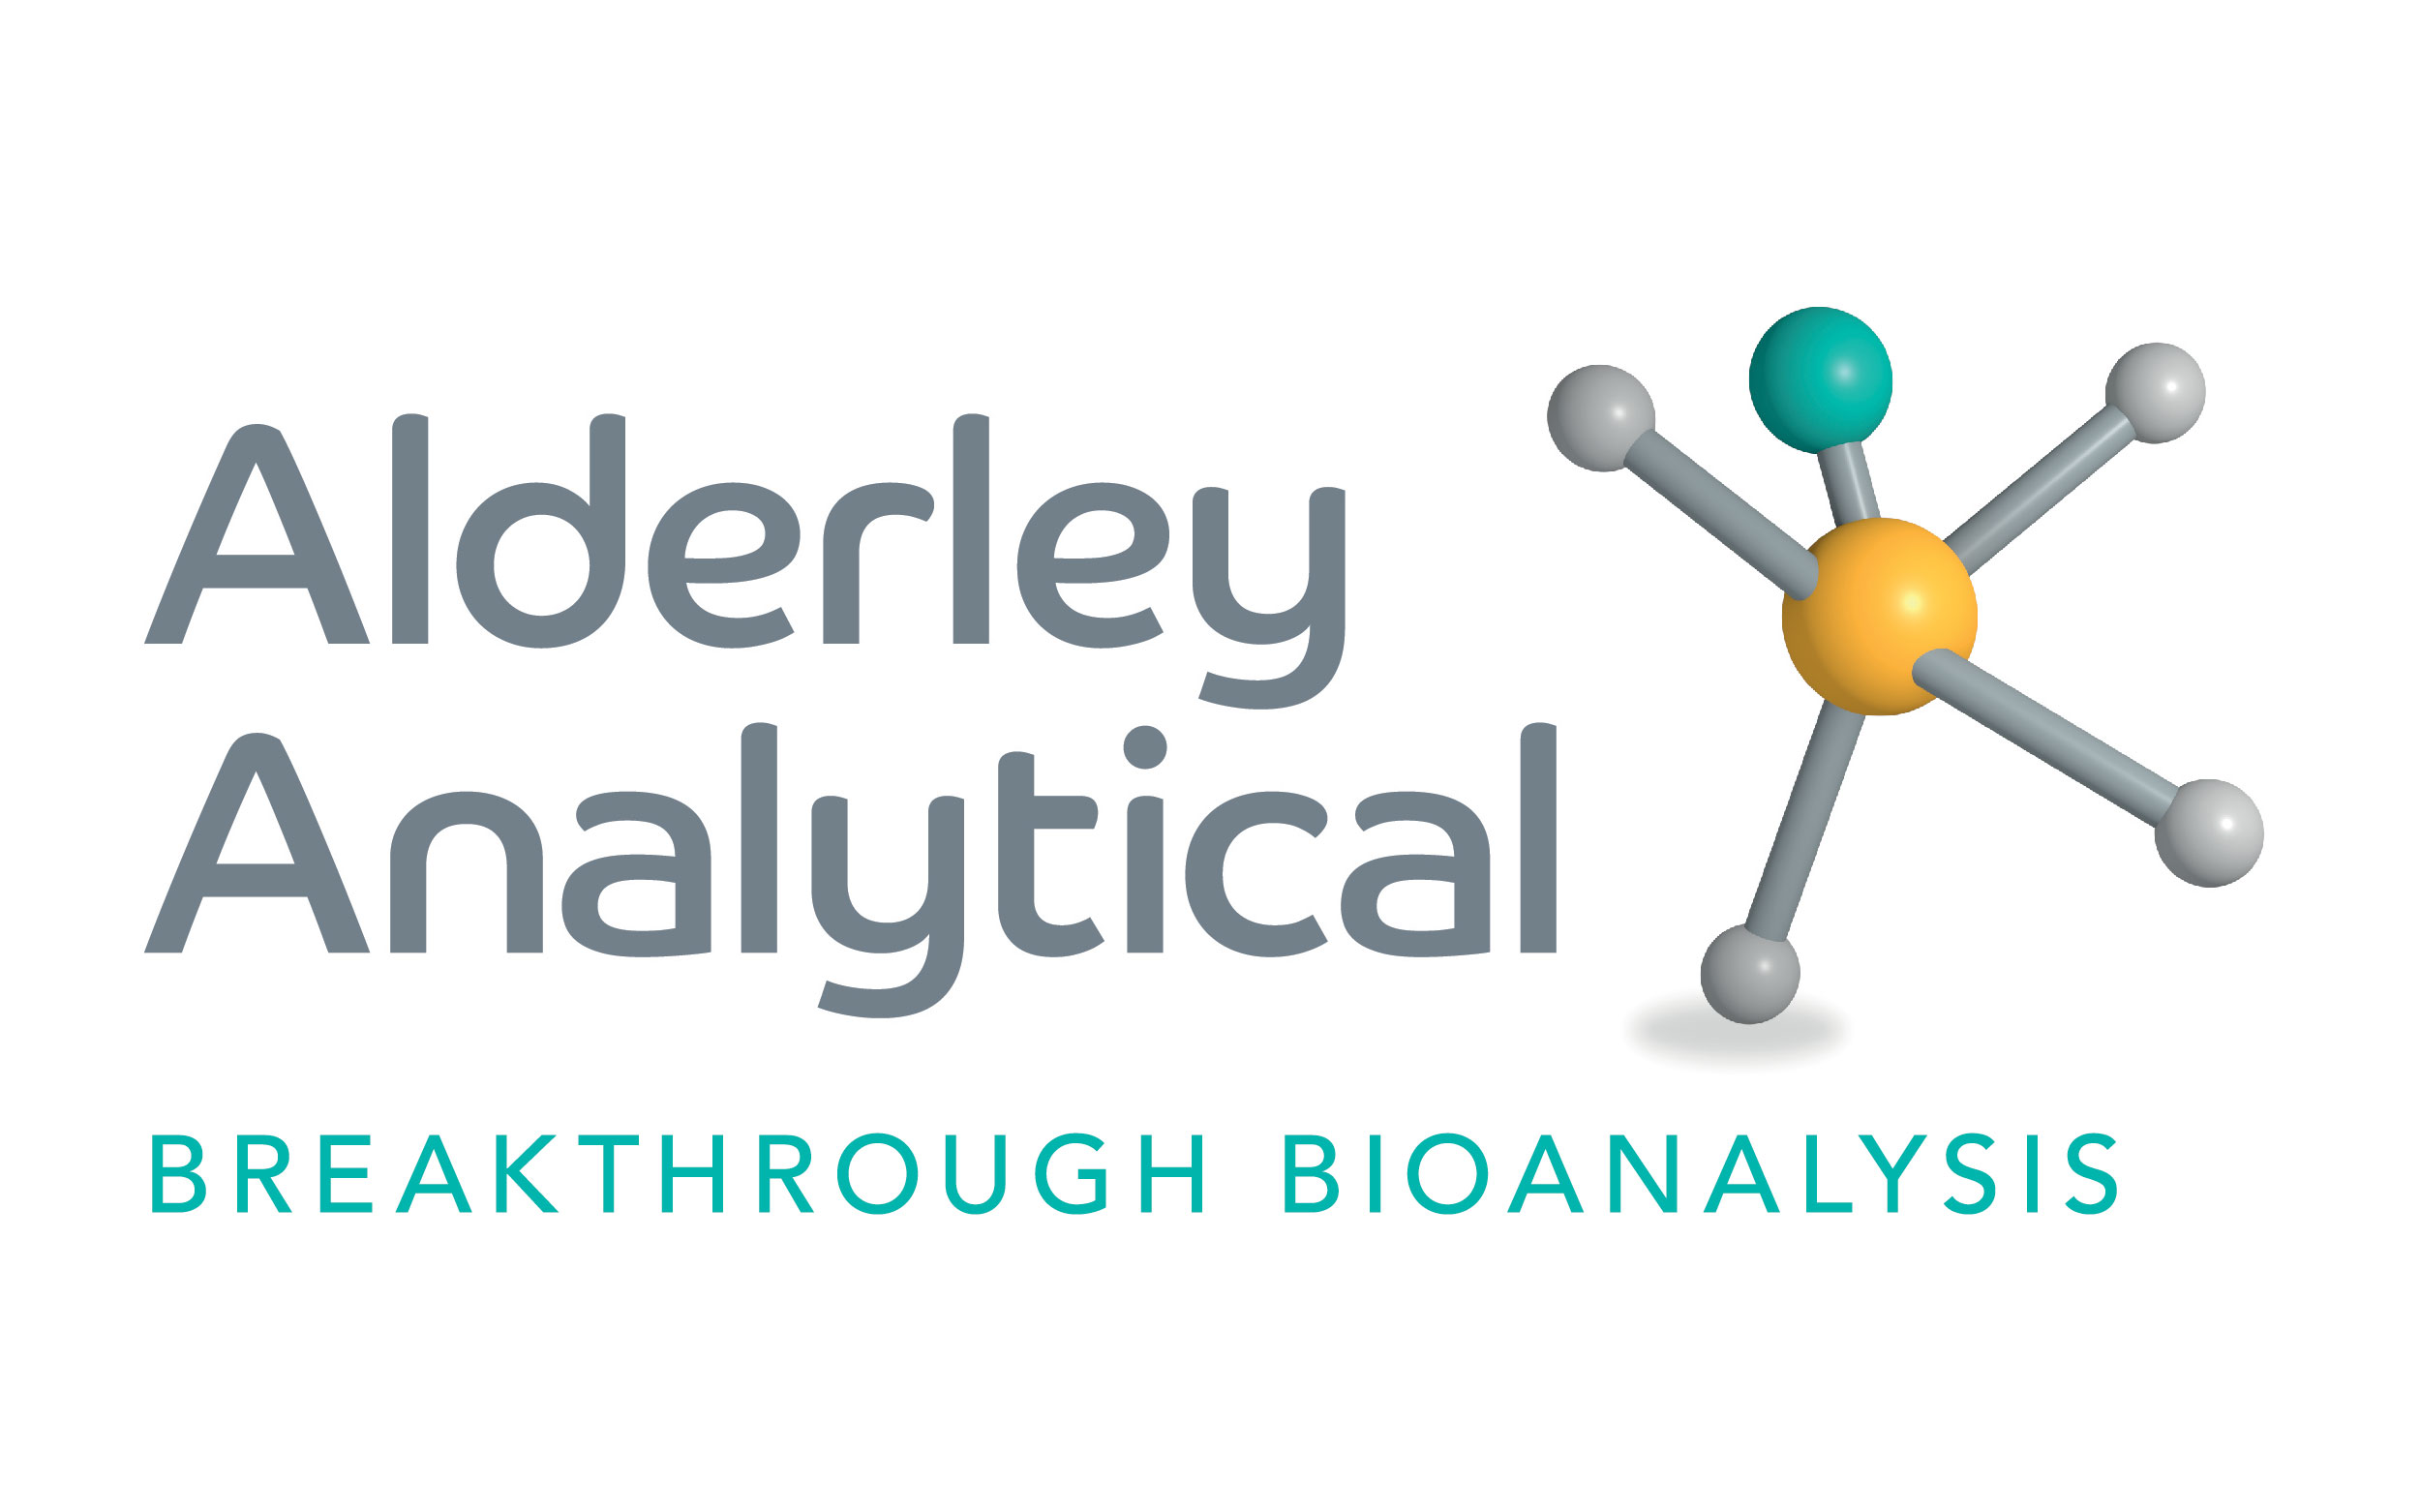 alderley analytical breaktrhough bioanalysis